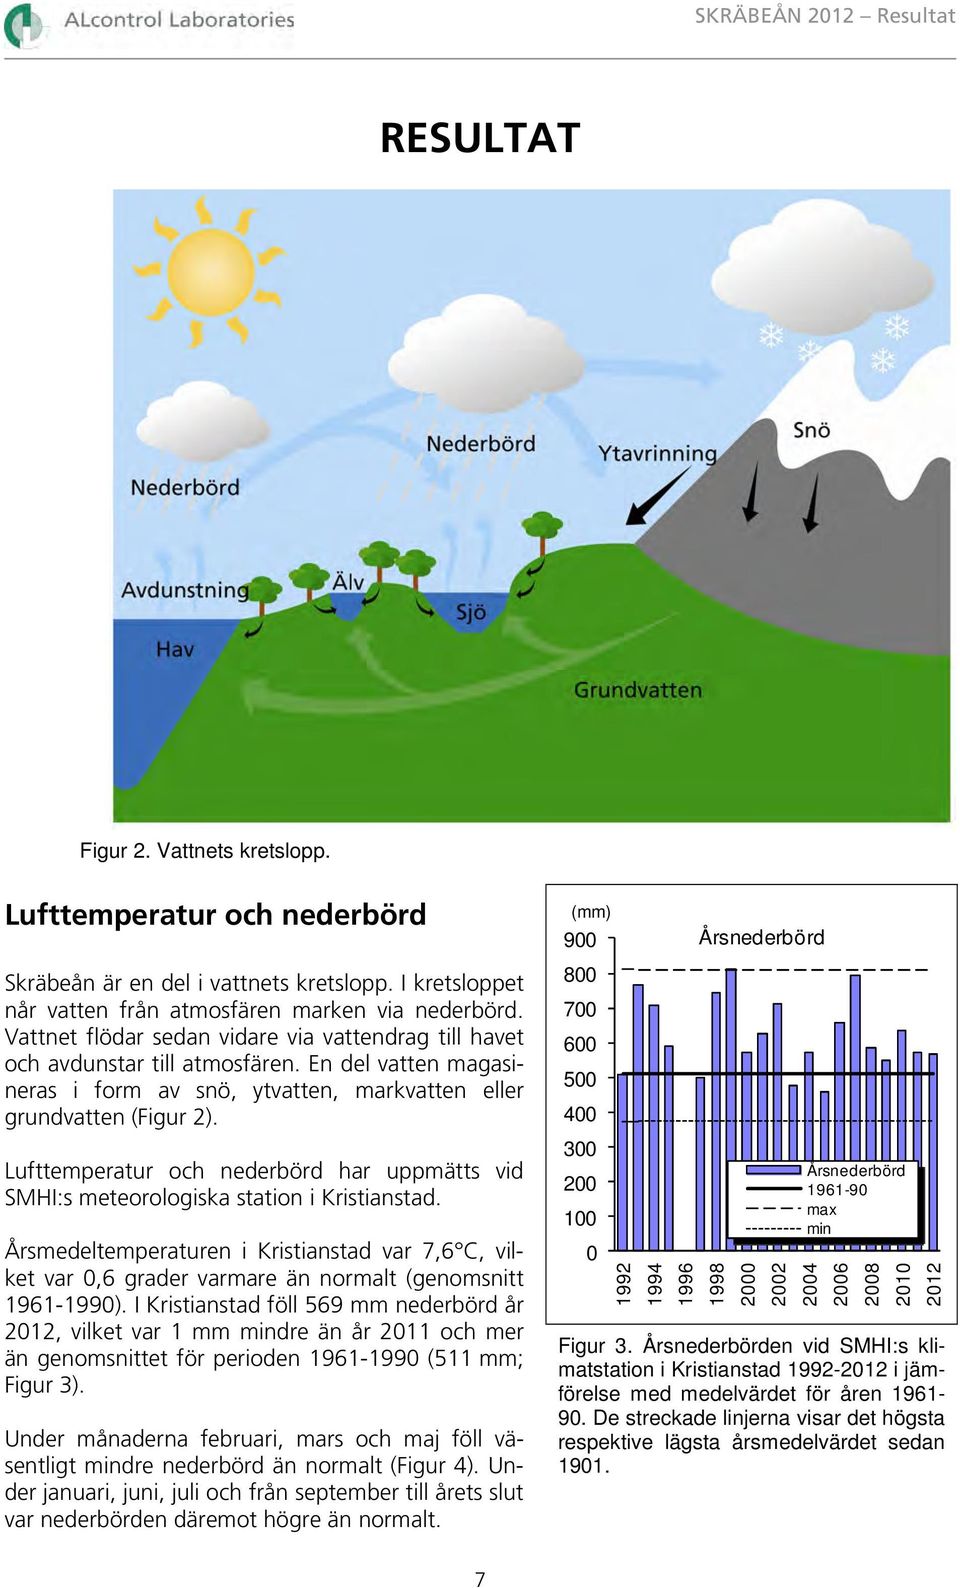 Lufttemperatur och nederbörd har uppmätts vid SMHI:s meteorologiska station i Kristianstad.